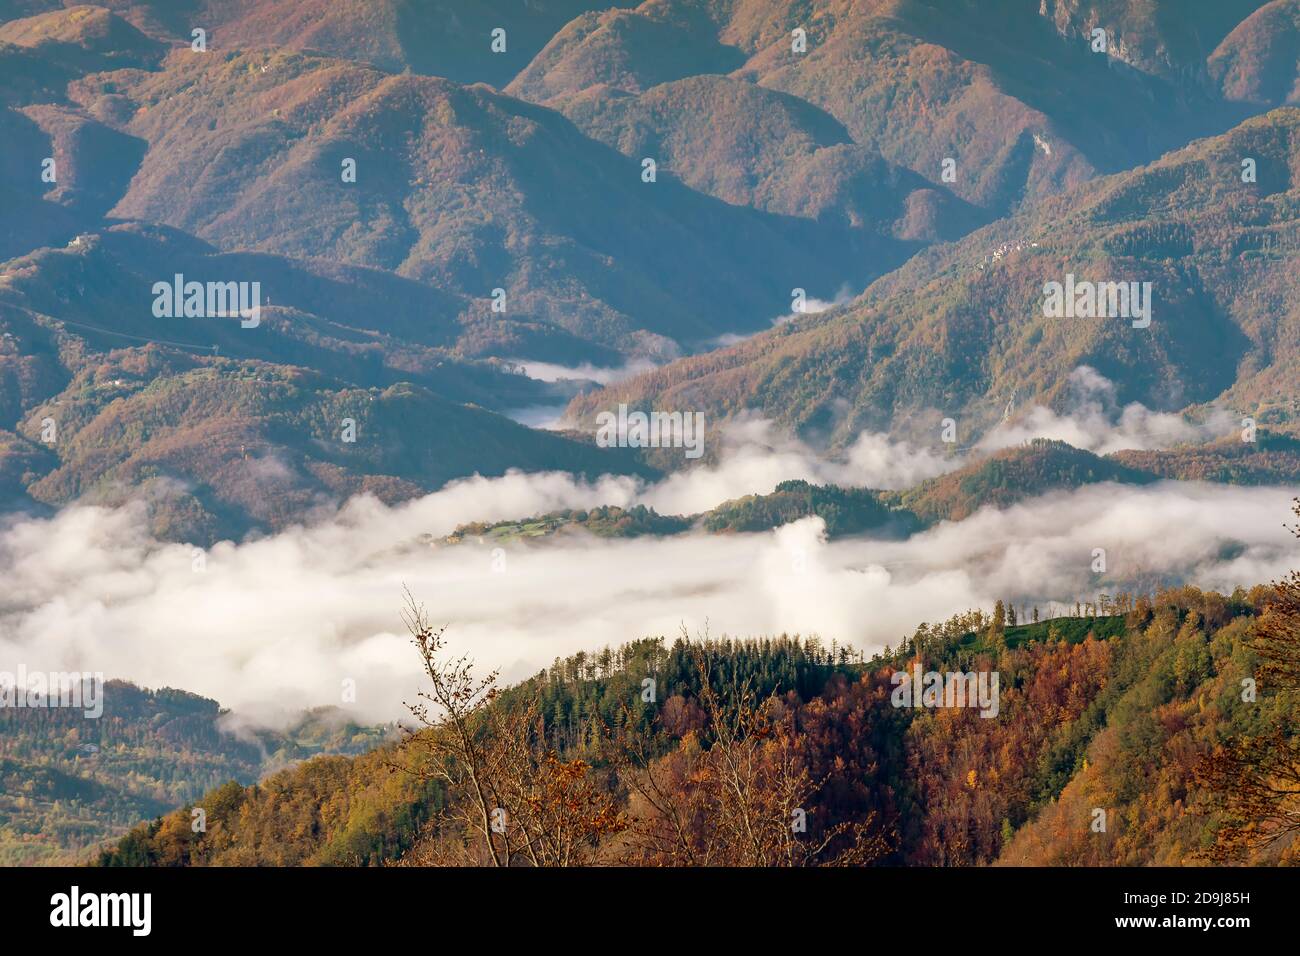 Bella vista panoramica aerea della Garfagnana da San Pellegrino in Alpe, con colori autunnali e basse nuvole nelle valli sottostanti, Italia Foto Stock